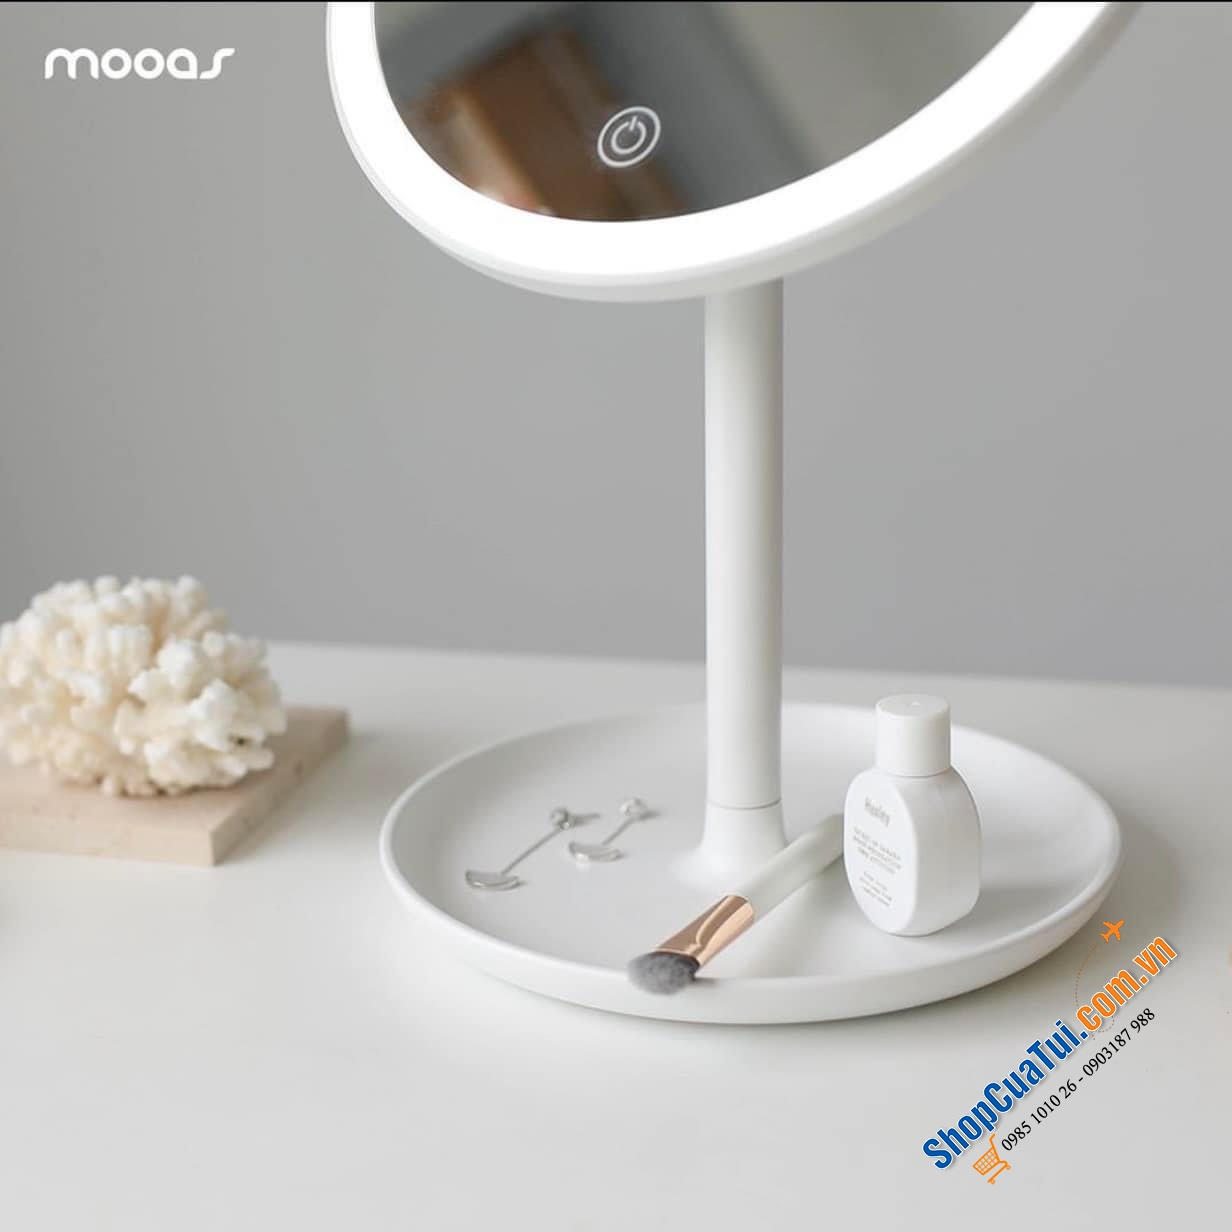 GƯƠNG TRANG ĐIỂM MOOAS - Pure makeup Led Mirror Mooas - hiện đại và tiện lợi dành cho hội chị em